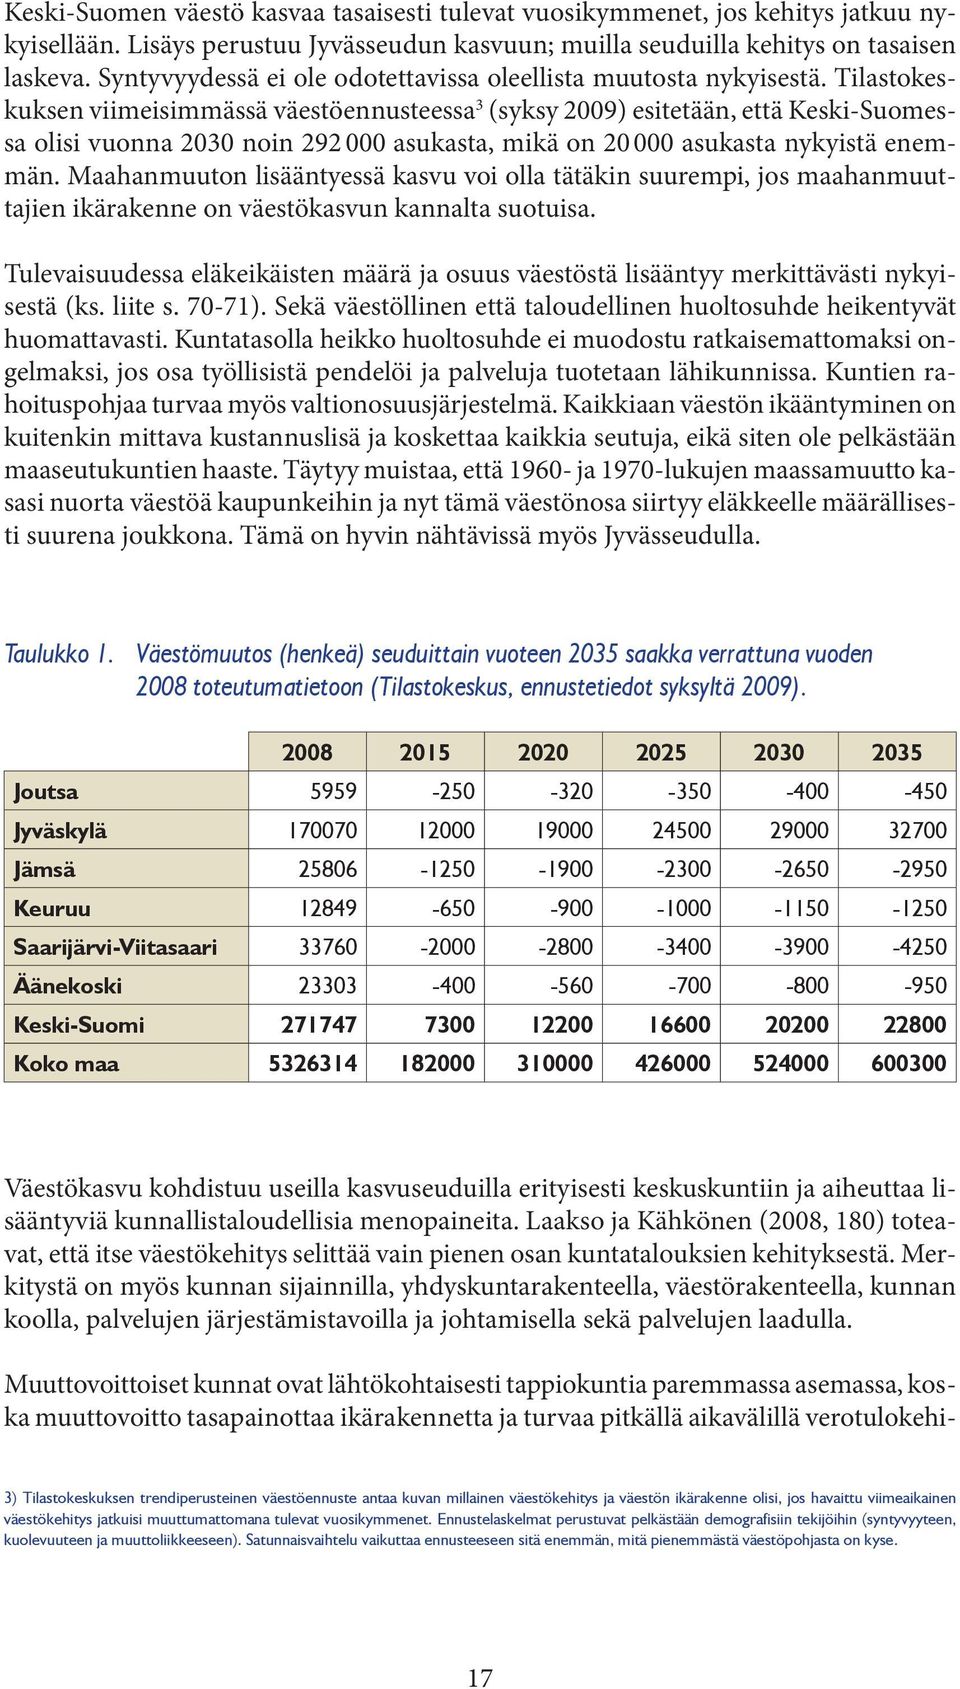 Tilastokeskuksen viimeisimmässä väestöennusteessa 3 (syksy 2009) esitetään, että Keski-Suomessa olisi vuonna 2030 noin 292 000 asukasta, mikä on 20 000 asukasta nykyistä enemmän.